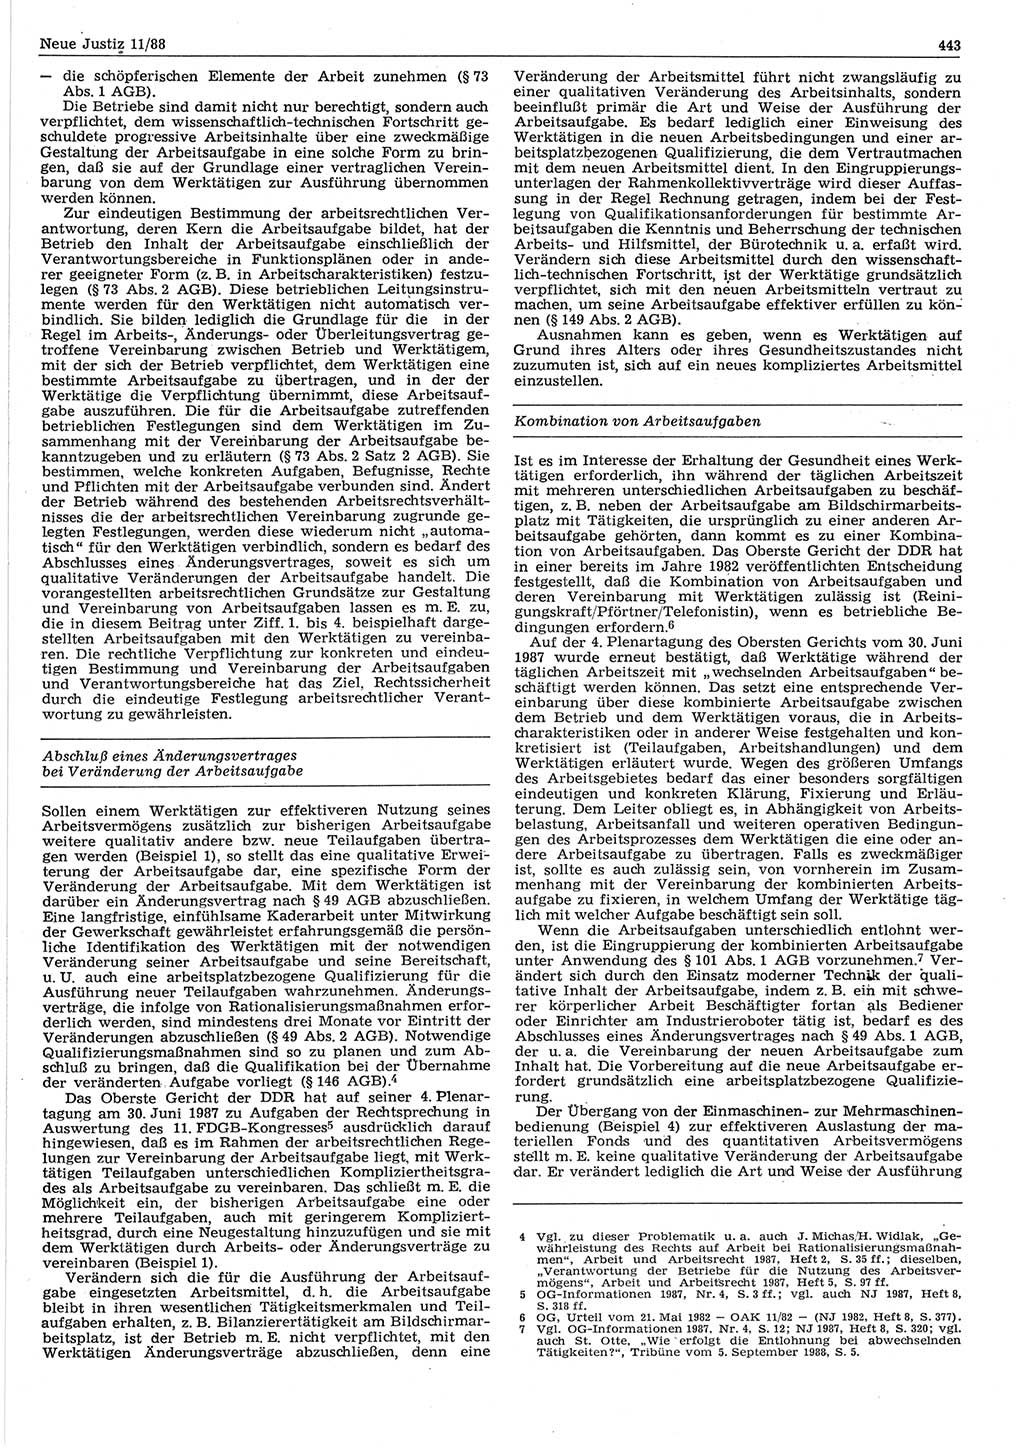 Neue Justiz (NJ), Zeitschrift für sozialistisches Recht und Gesetzlichkeit [Deutsche Demokratische Republik (DDR)], 42. Jahrgang 1988, Seite 443 (NJ DDR 1988, S. 443)